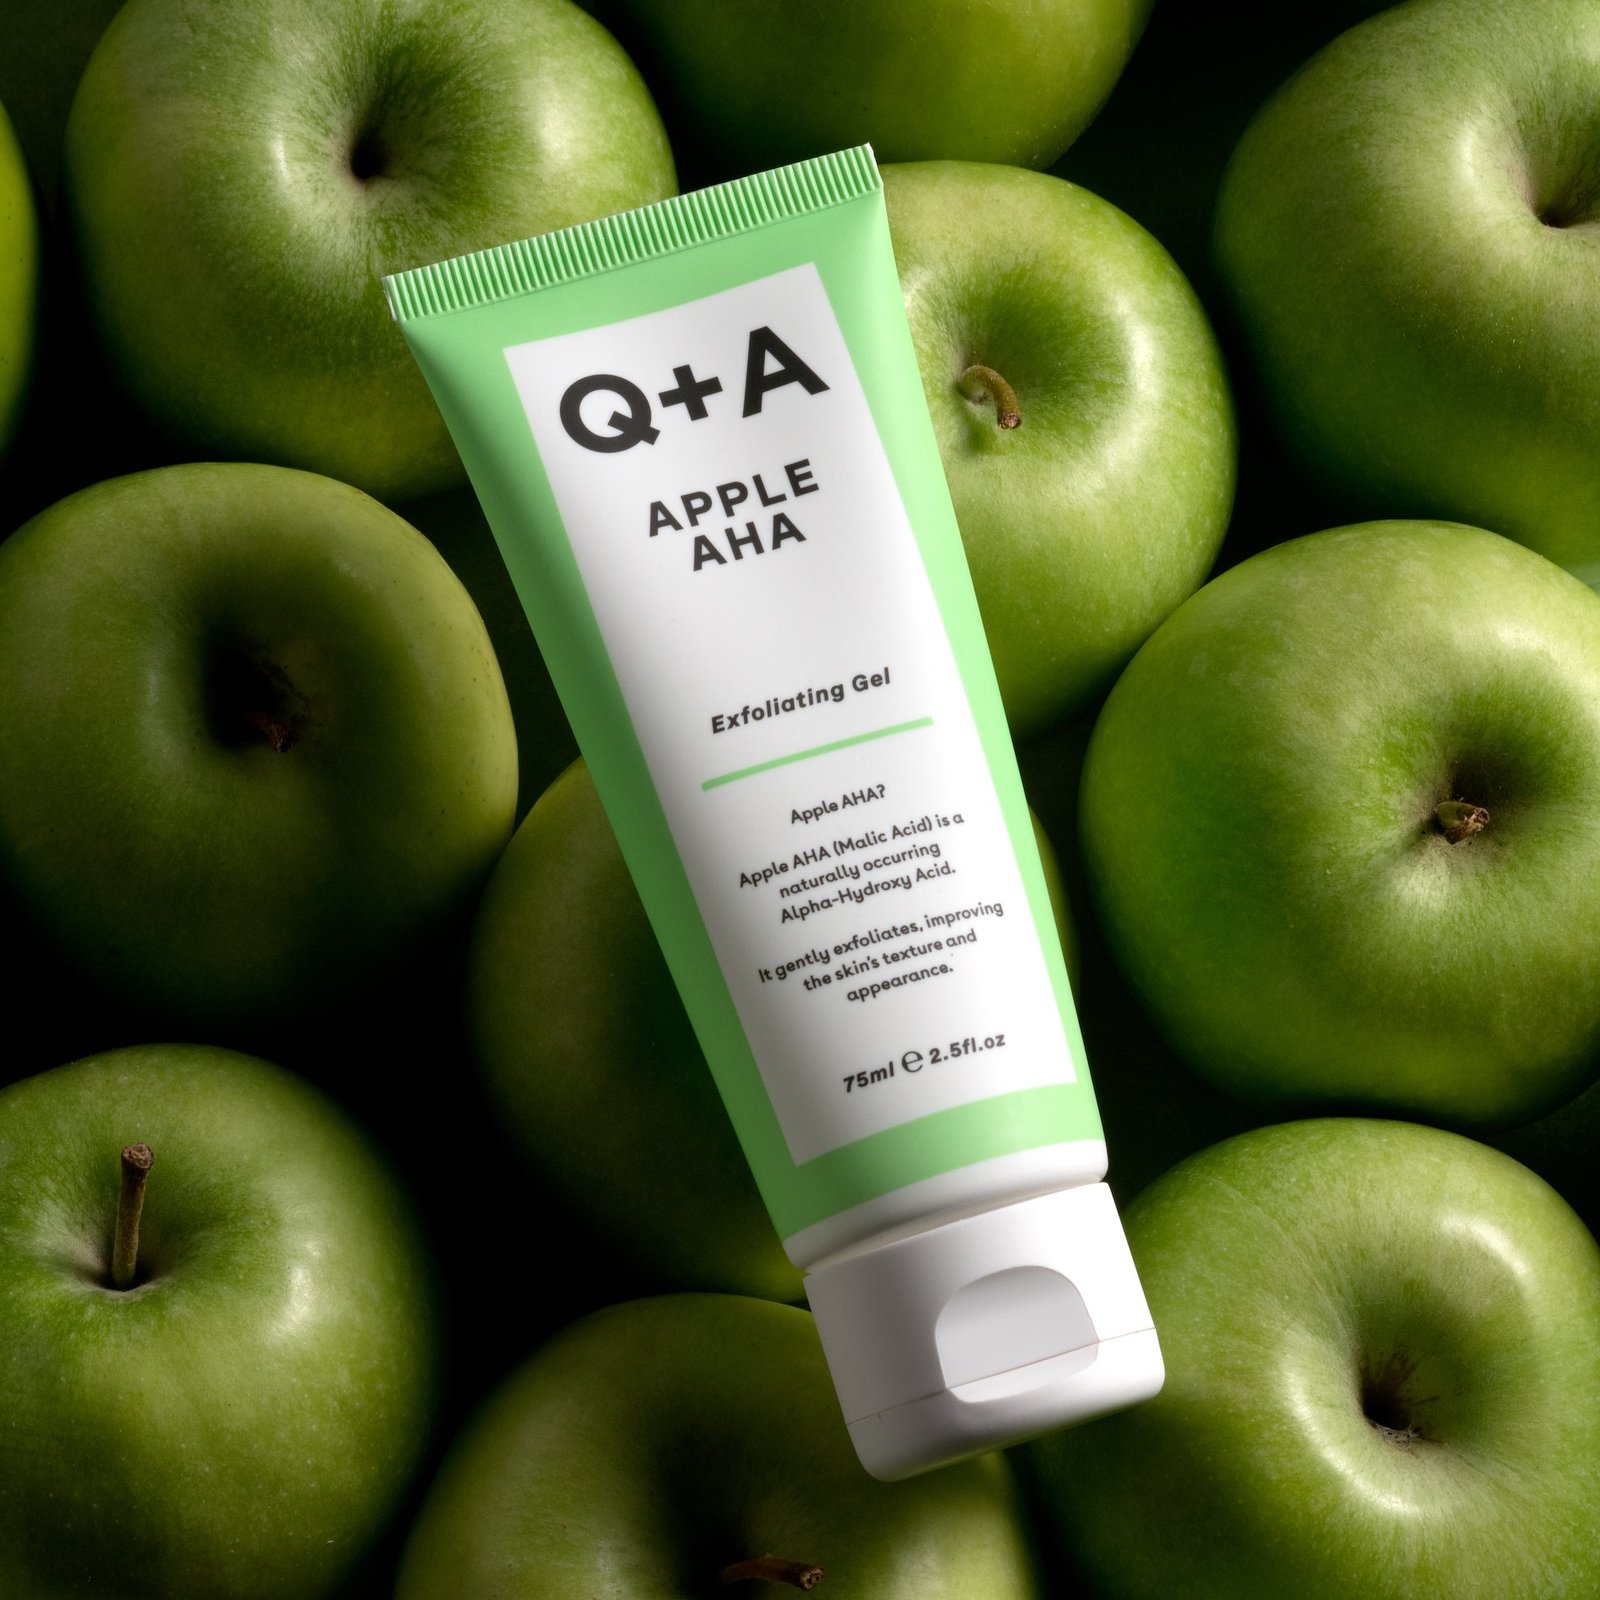 Q+A Apple AHA Exfoliating Gel 75 ml